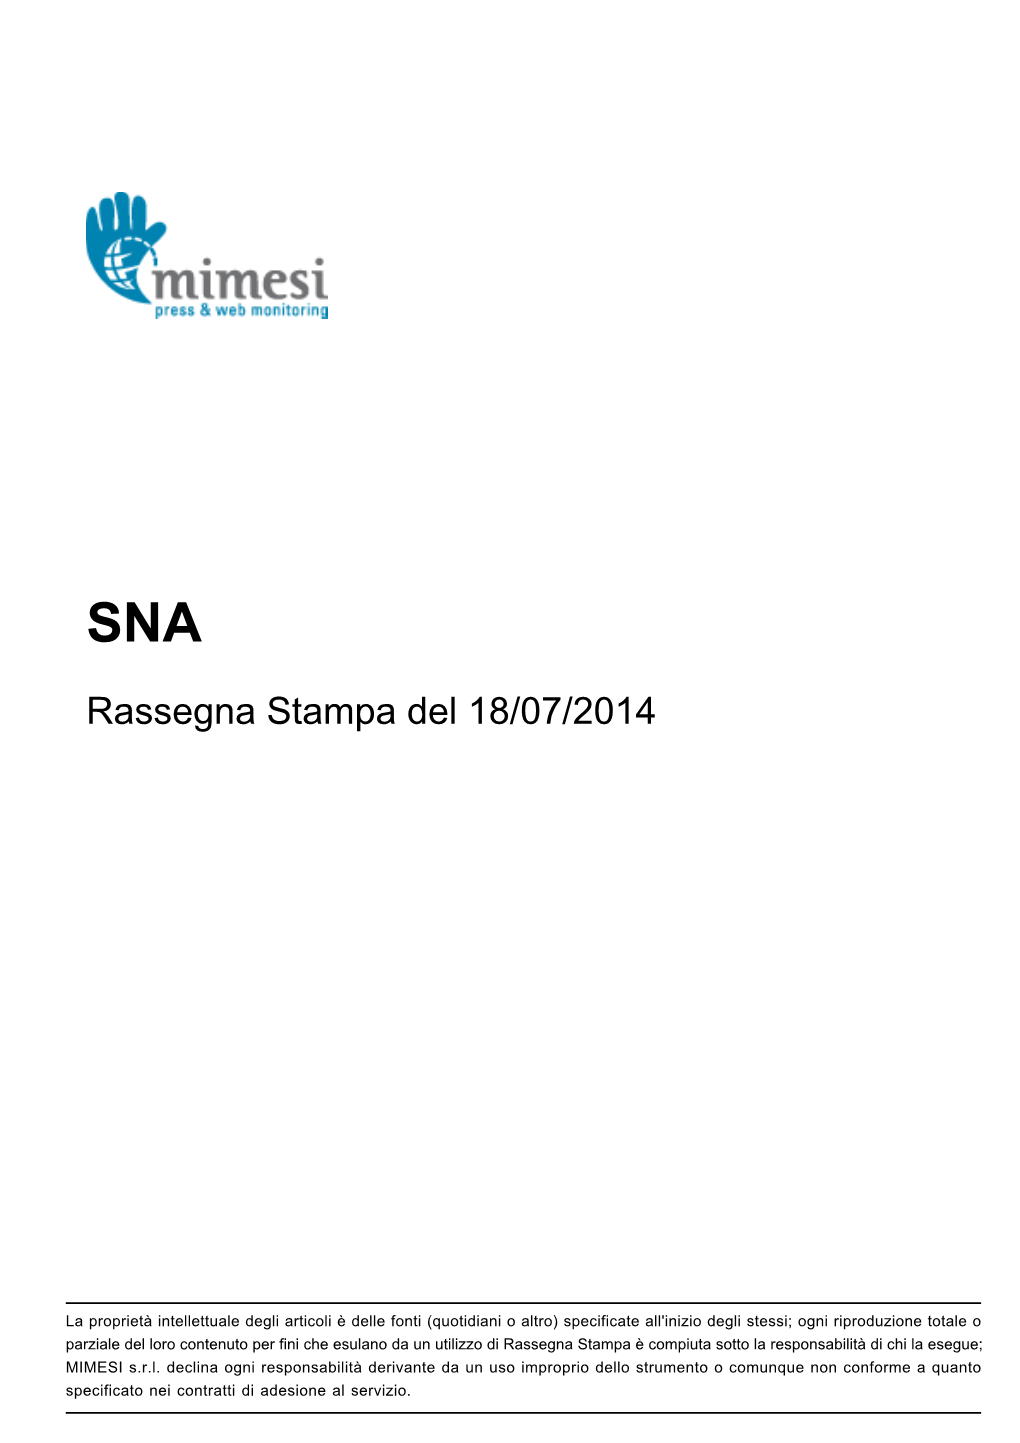 Rassegna Stampa Del 18/07/2014